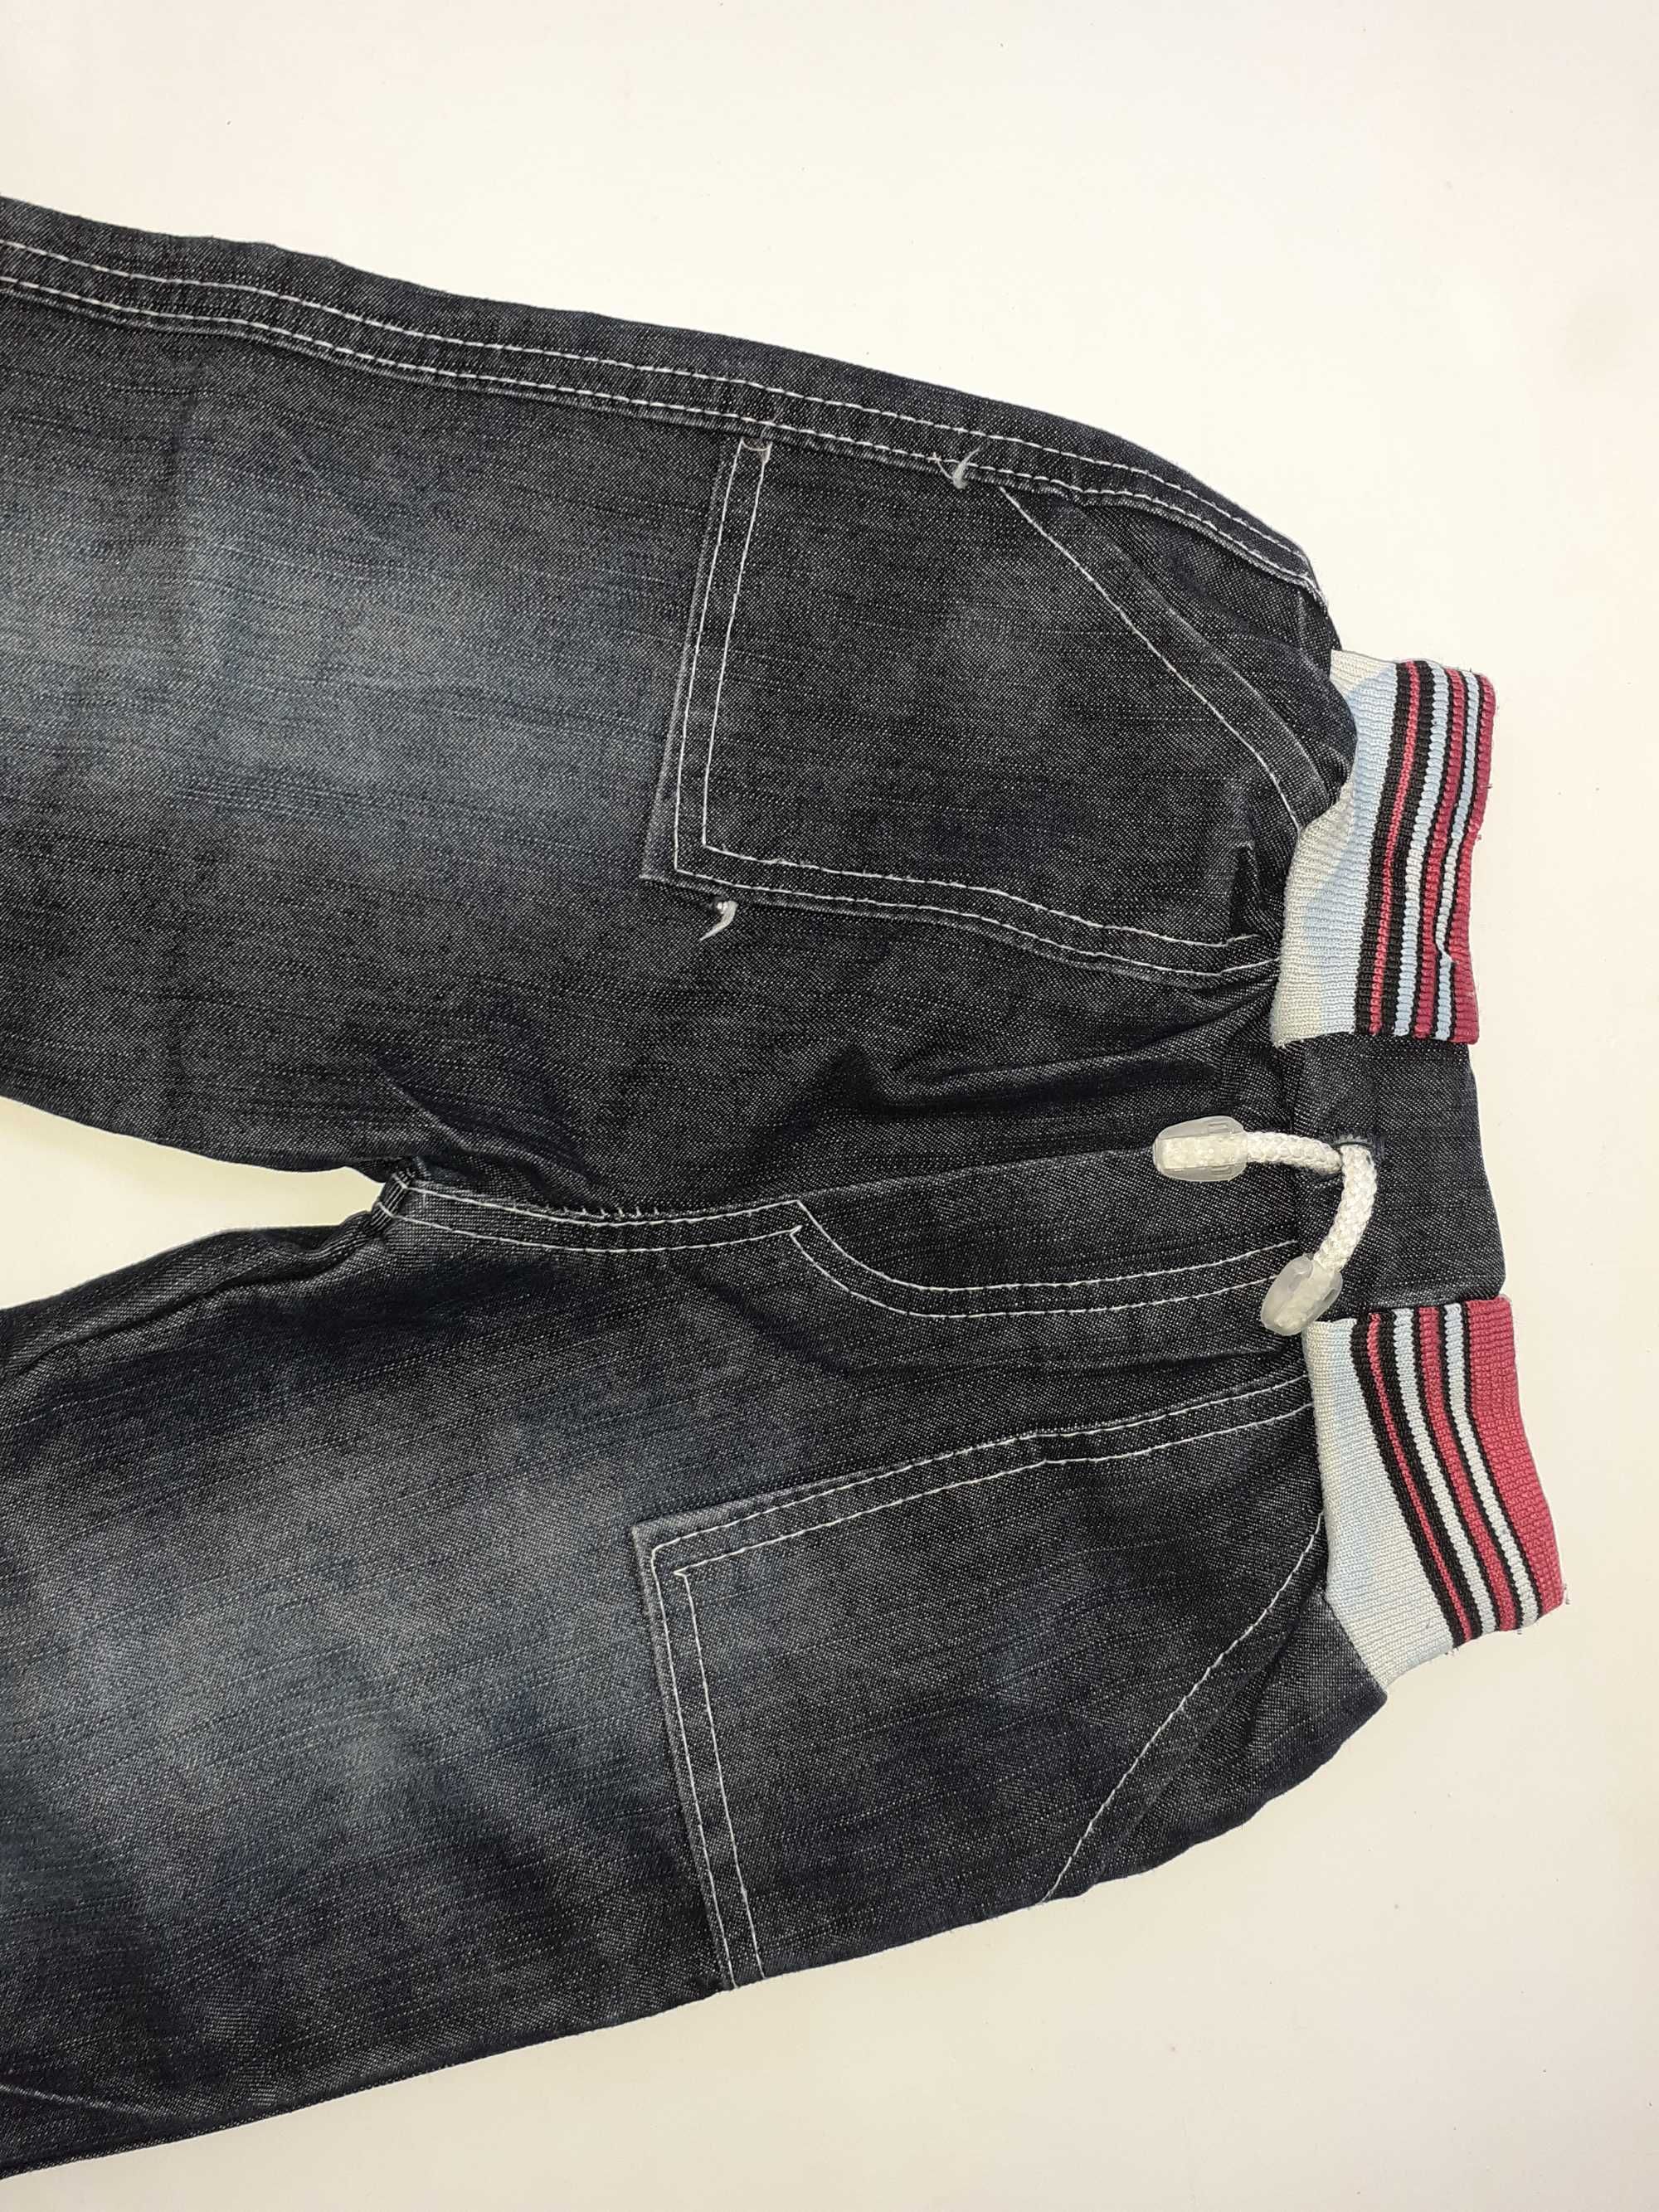 Spodnie dziewczęce - jeans - r. 80-86